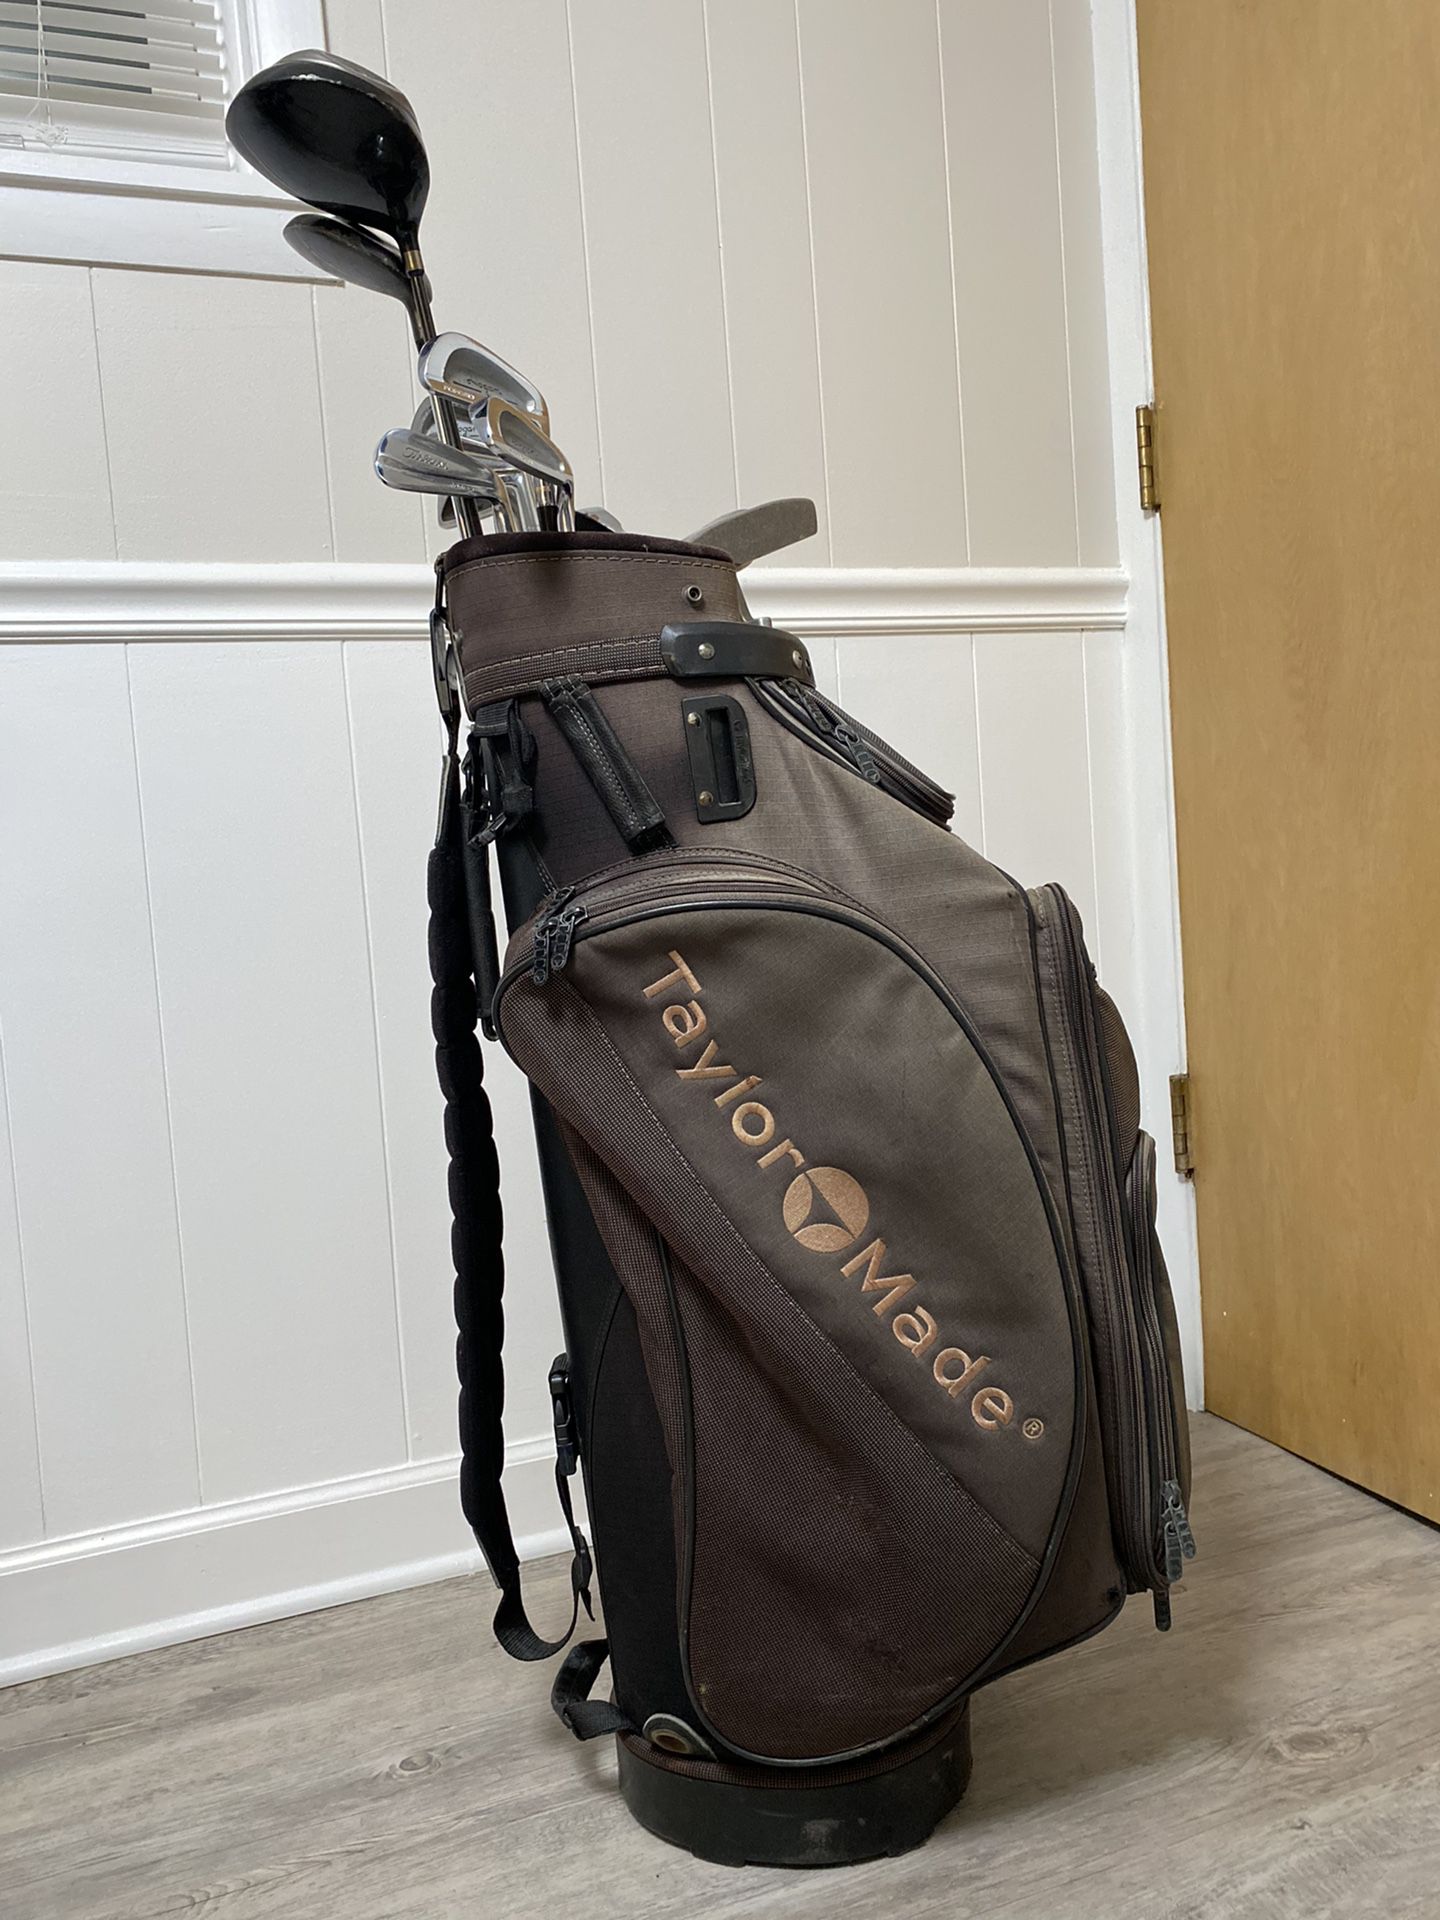 Golf Clubs - Ben Hogan Irons w/ mix of Titleist & Taylor Made Golf Bag